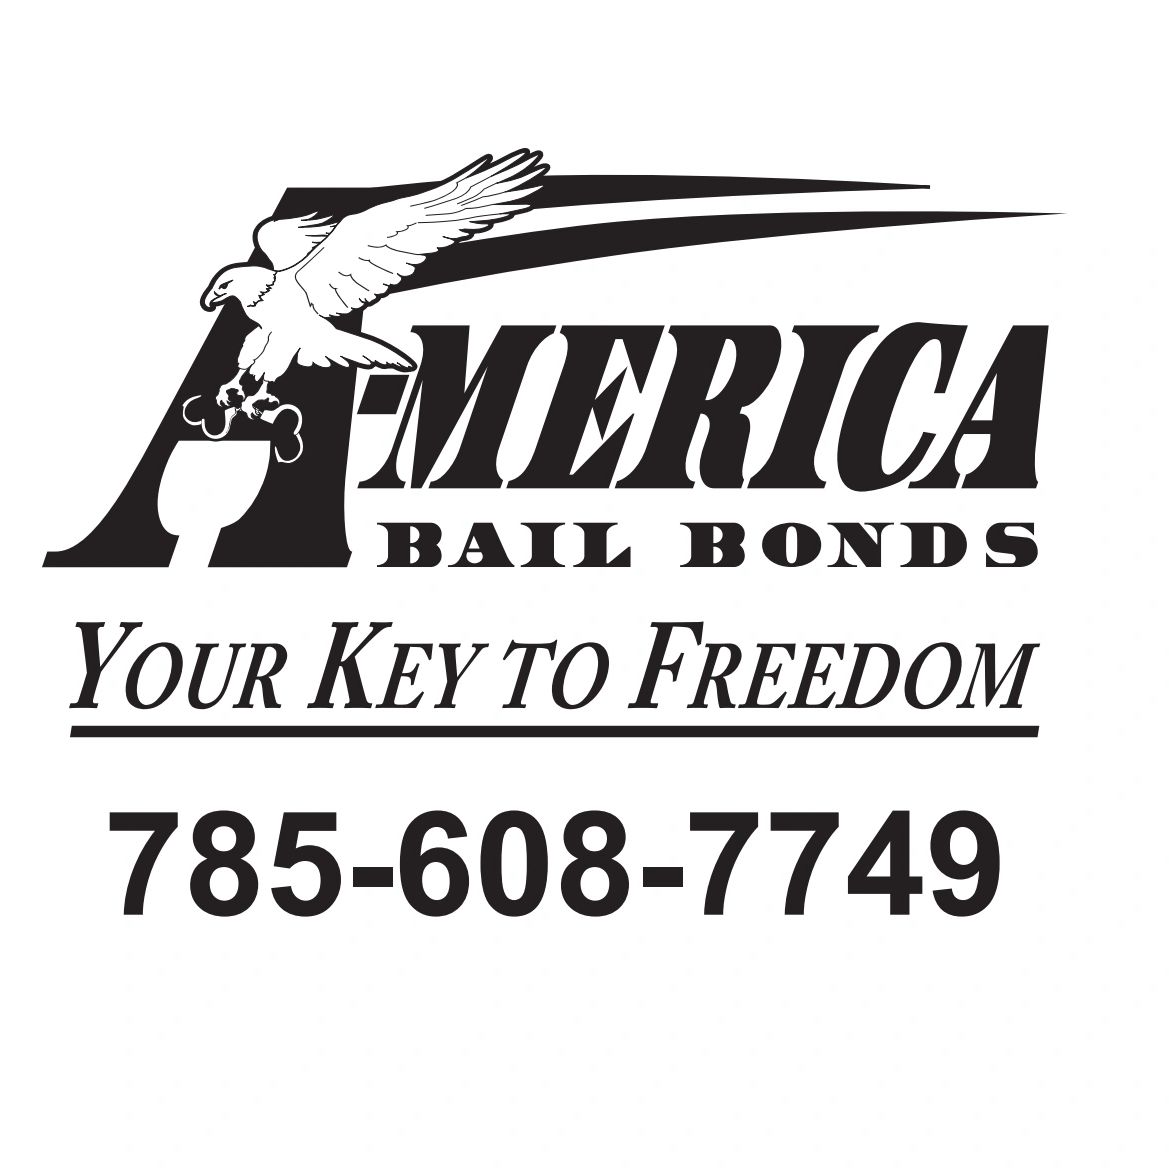 bail bondsman topeka ks
bail bondsmen topeka
bail bonds near me
bail bonds
a-merica bail bonds
